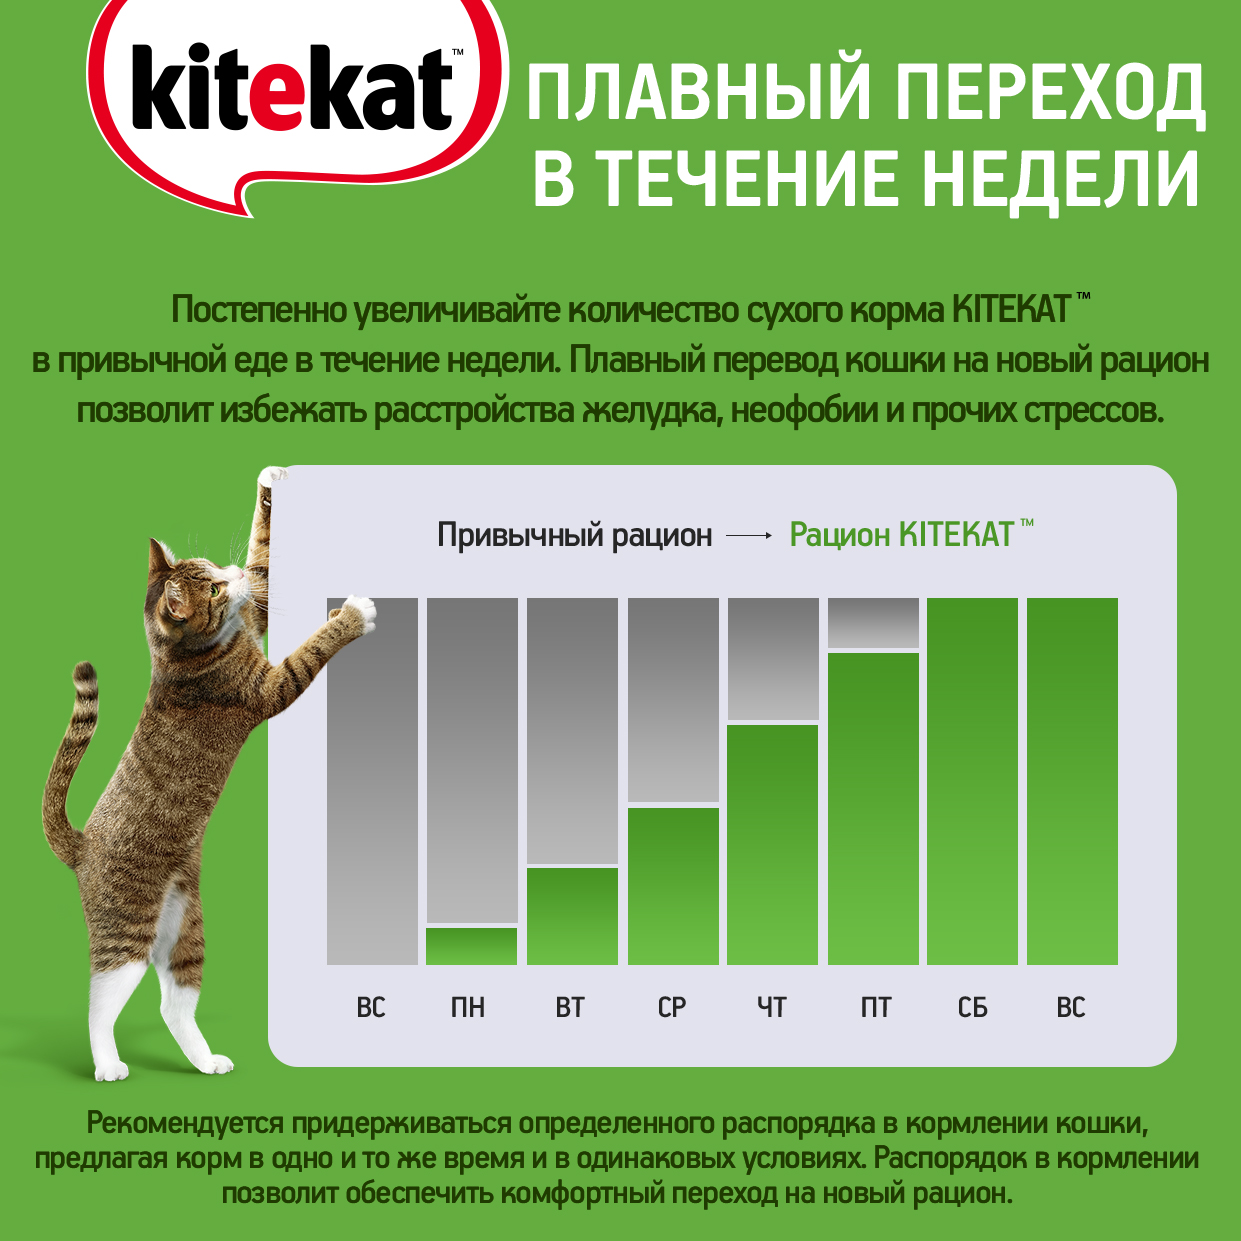 Влажный корм для кошек KITEKAT «Вкусная треска» с рыбой в соусе, 85г